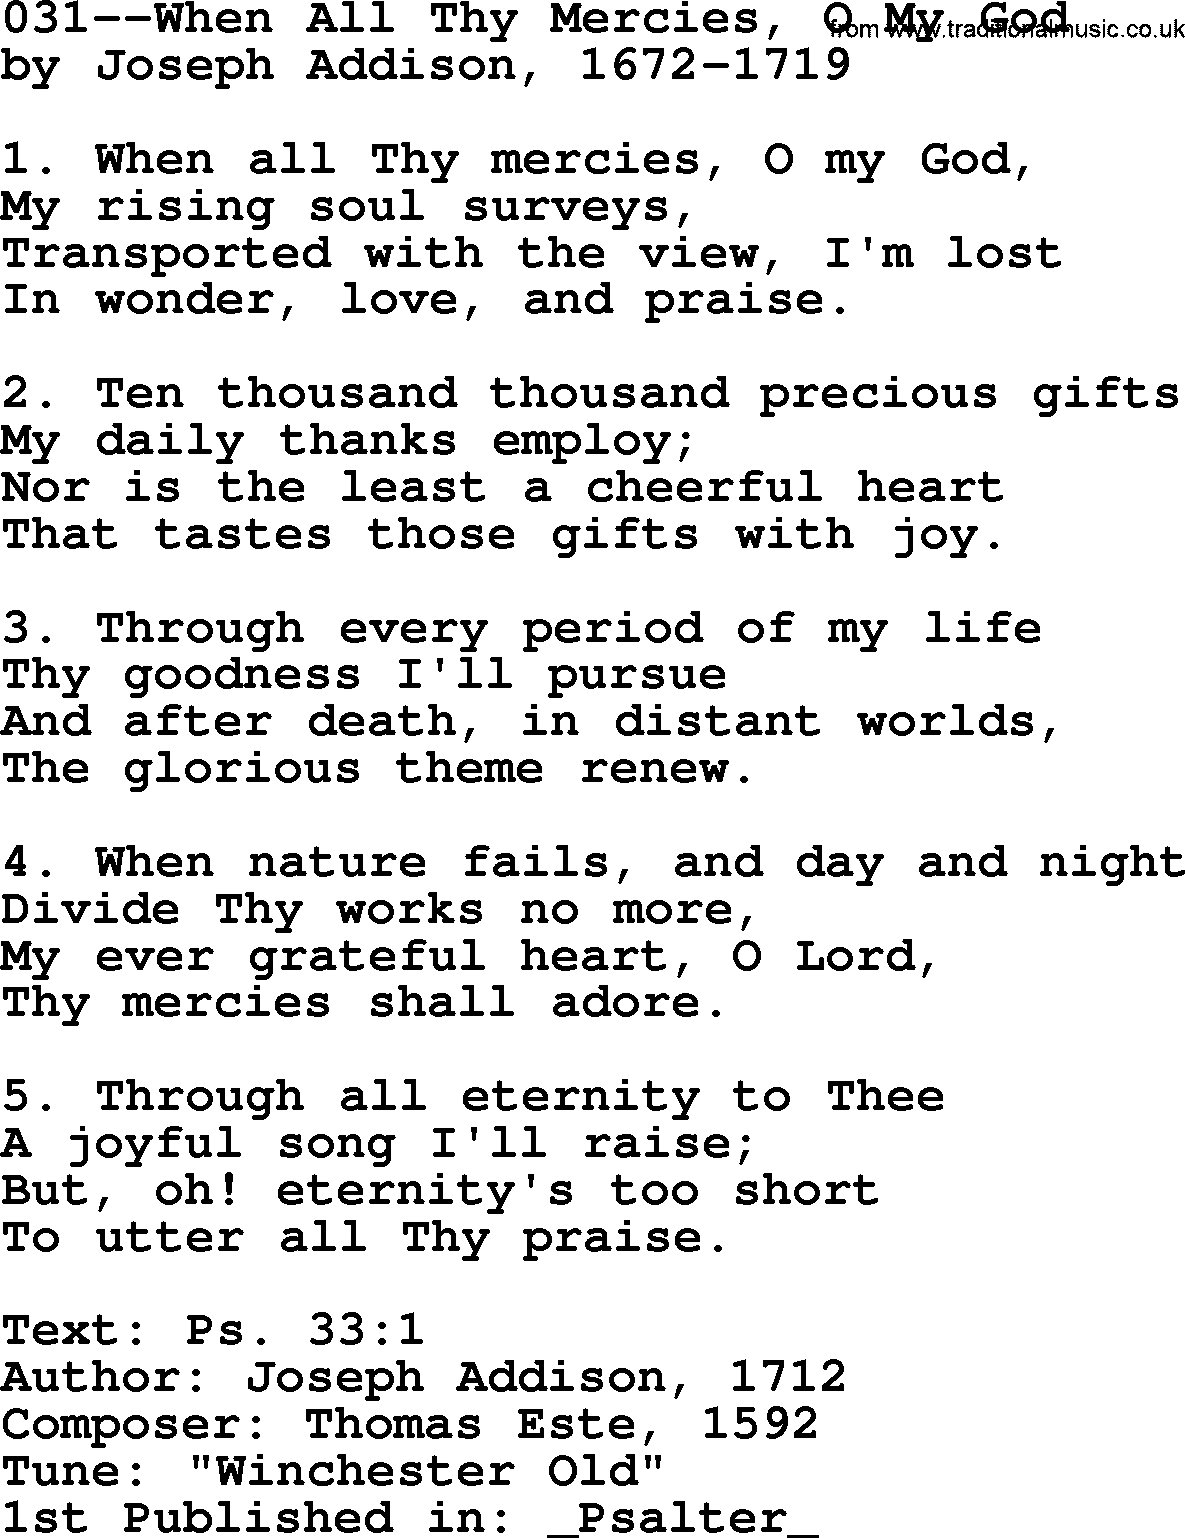 Lutheran Hymn: 031--When All Thy Mercies, O My God.txt lyrics with PDF